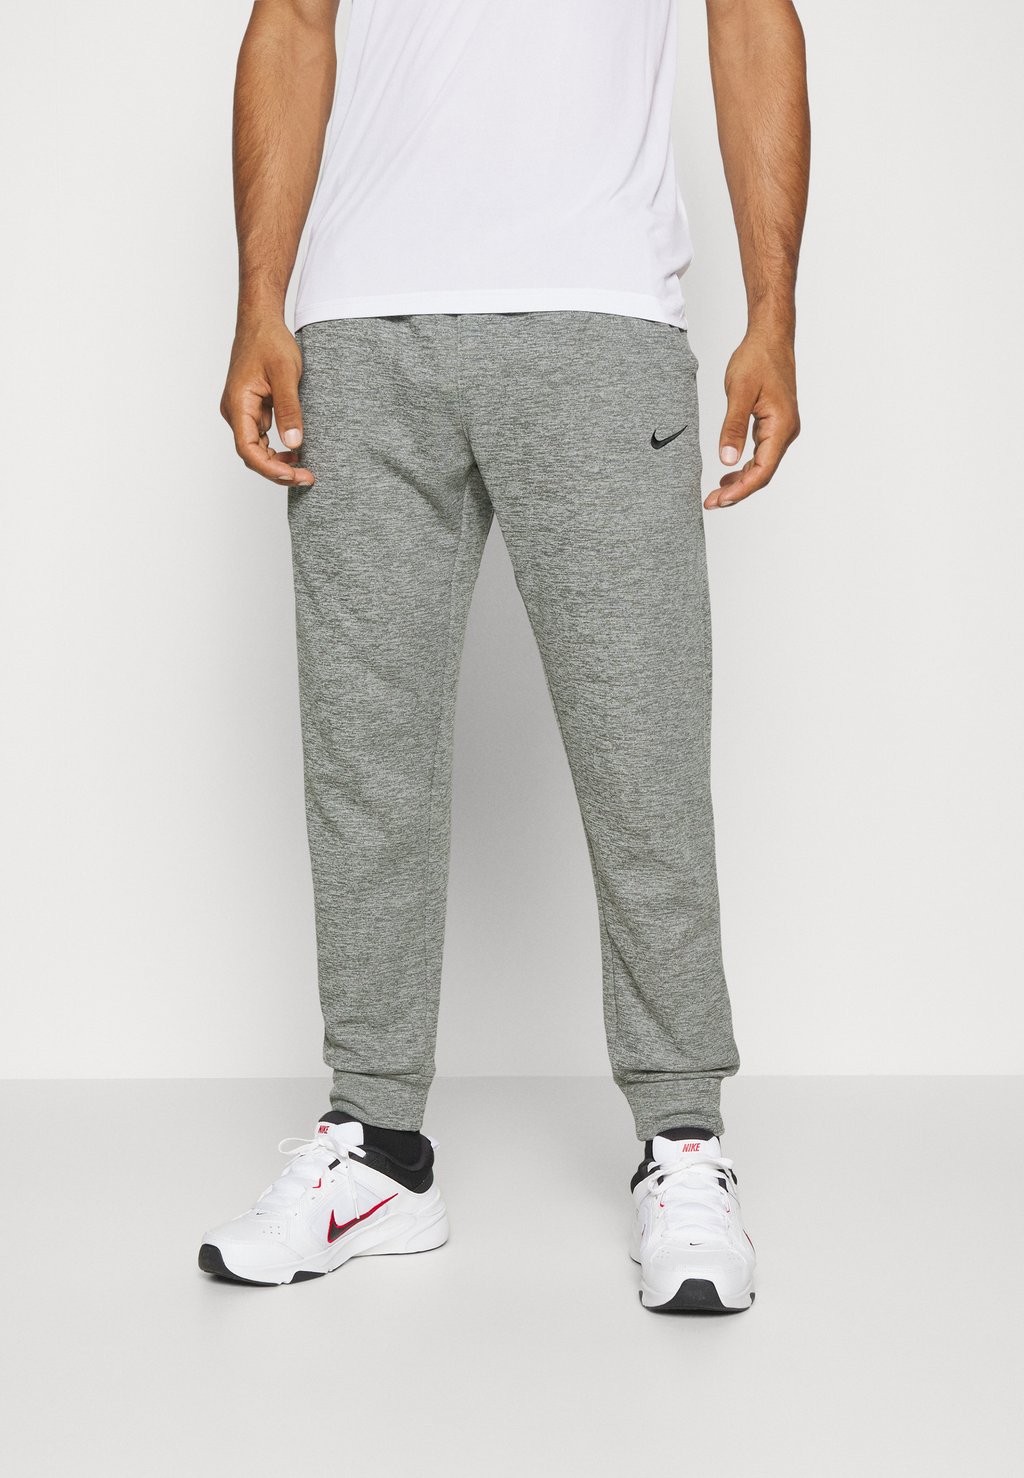 Спортивные брюки PANT TAPER Nike, темно-серый вереск/серый/черный спортивные брюки pant taper nike deep jungle